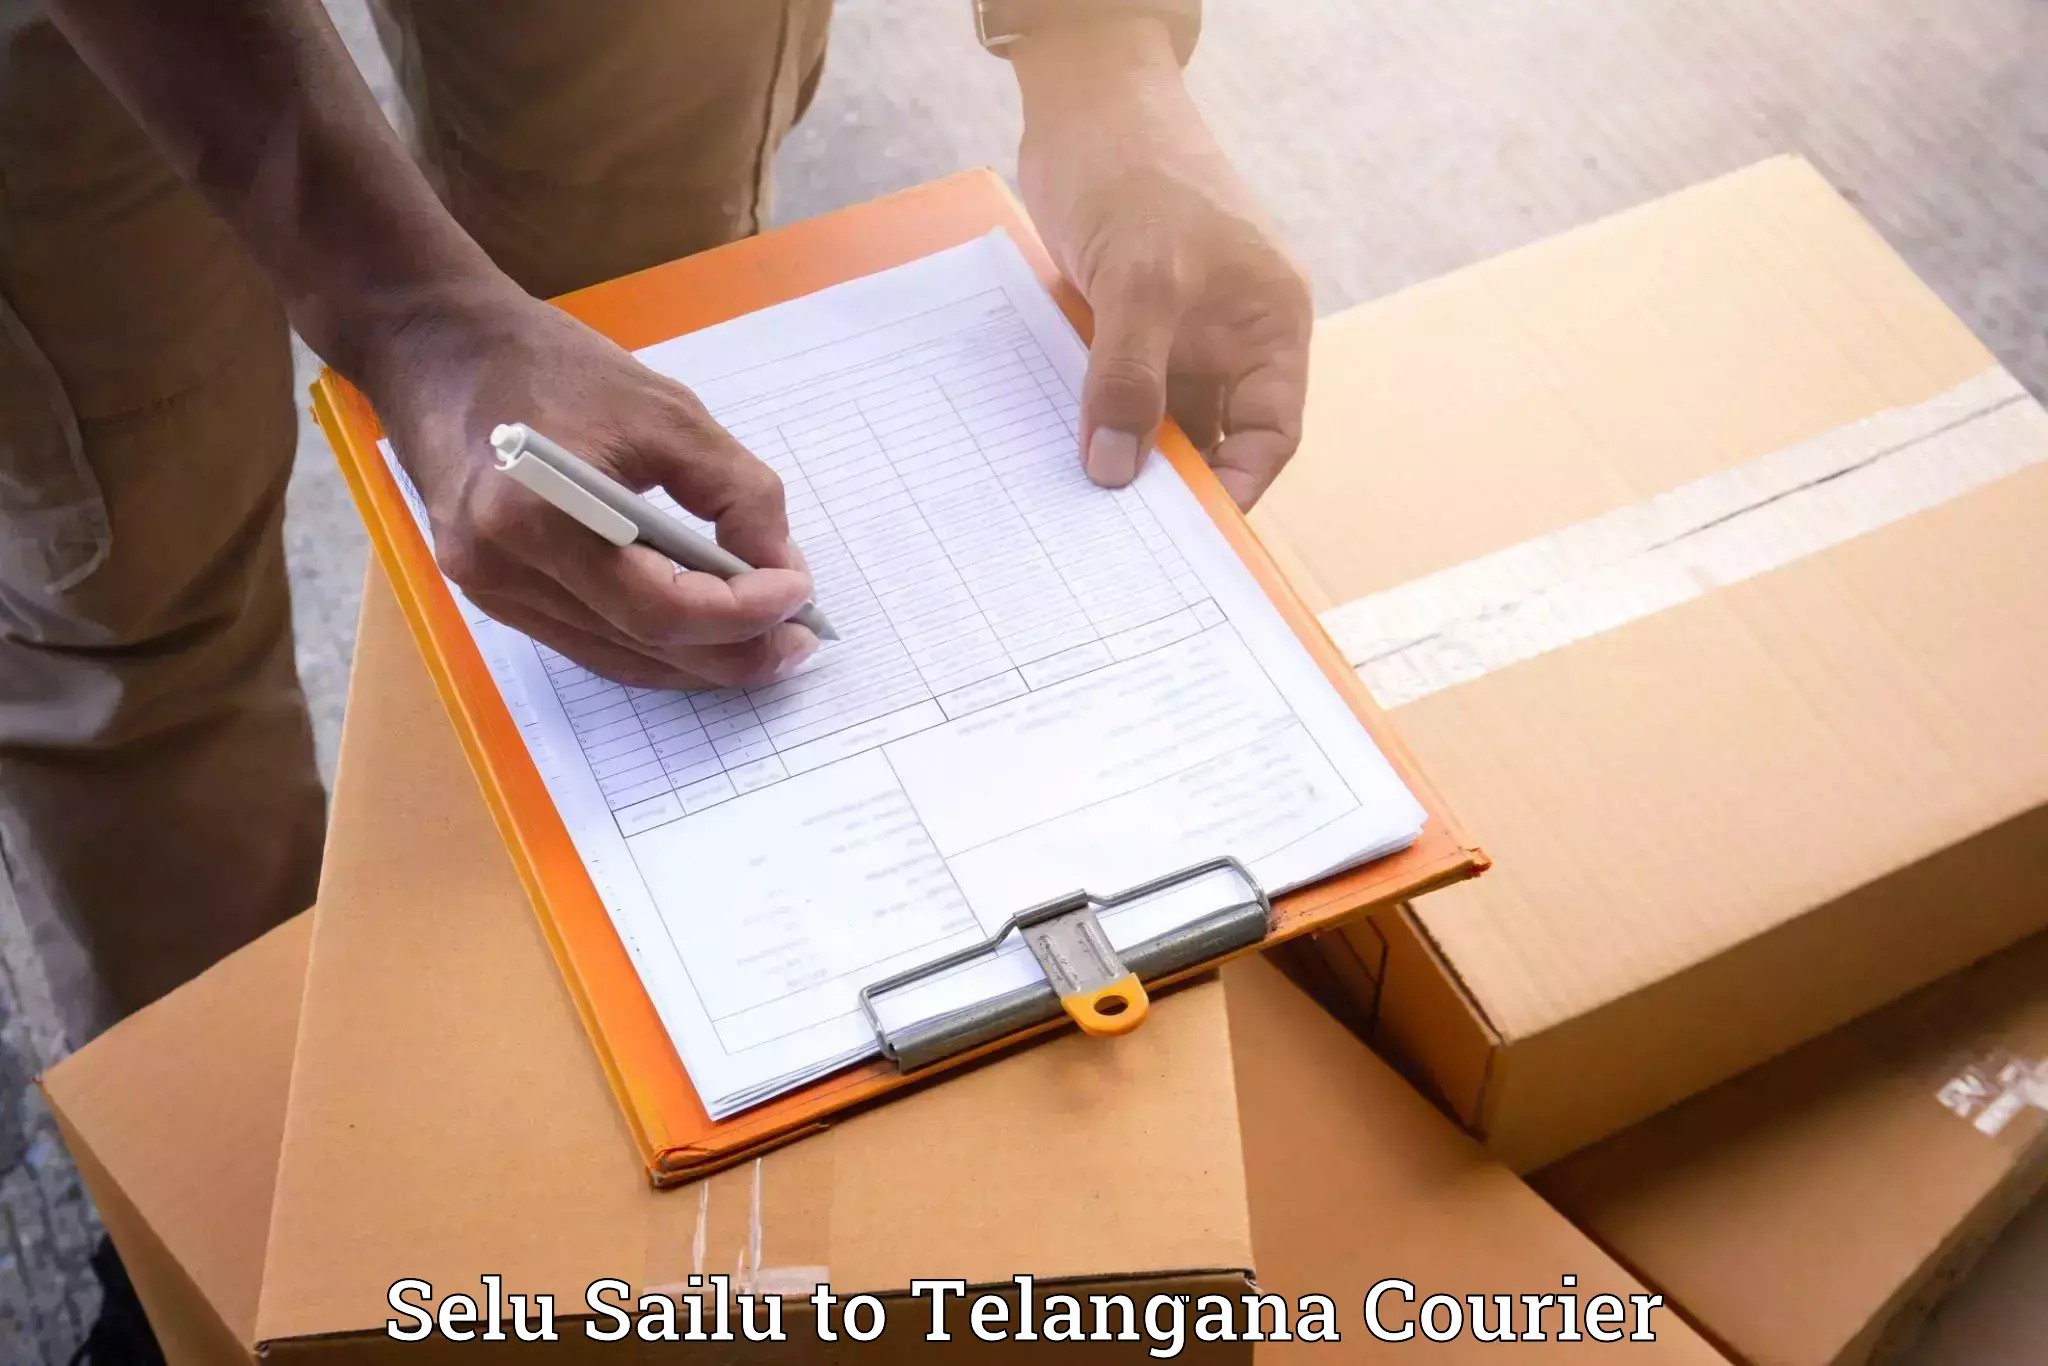 Trusted furniture transport in Selu Sailu to Jainad